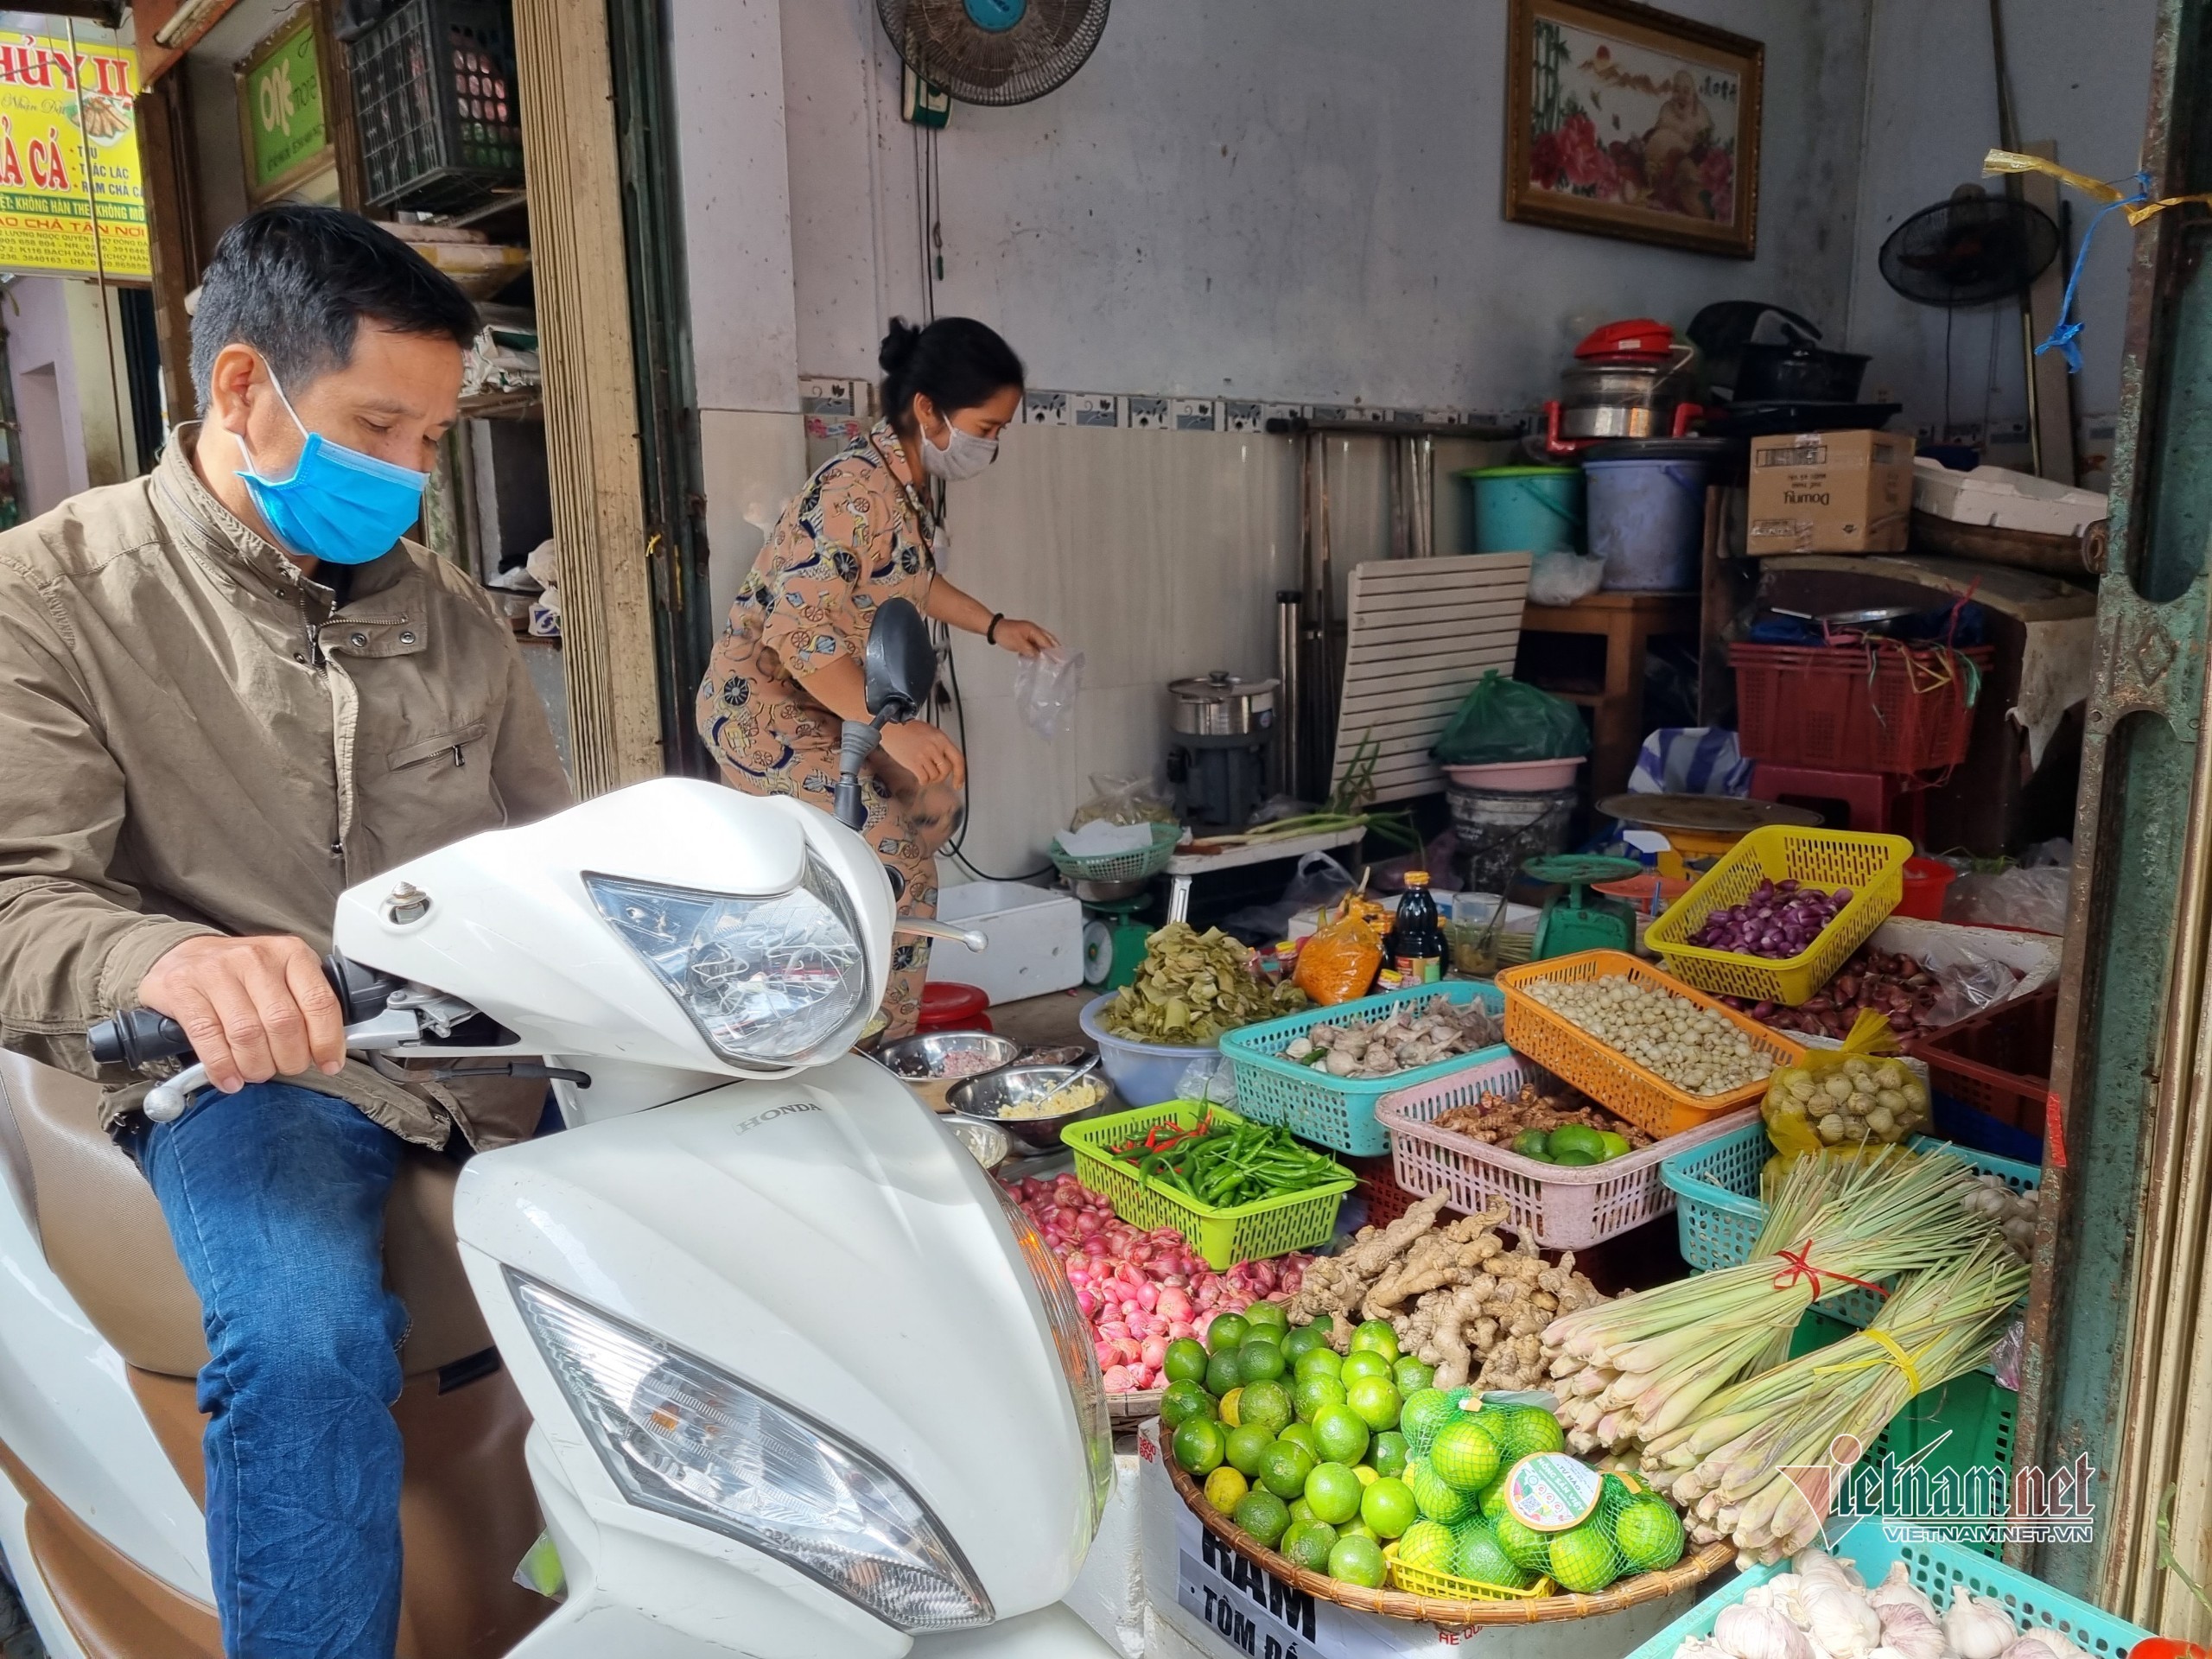 Cơn sốt chợ Đà thành: Gừng tăng 50%, sả lên giá gần gấp đôi